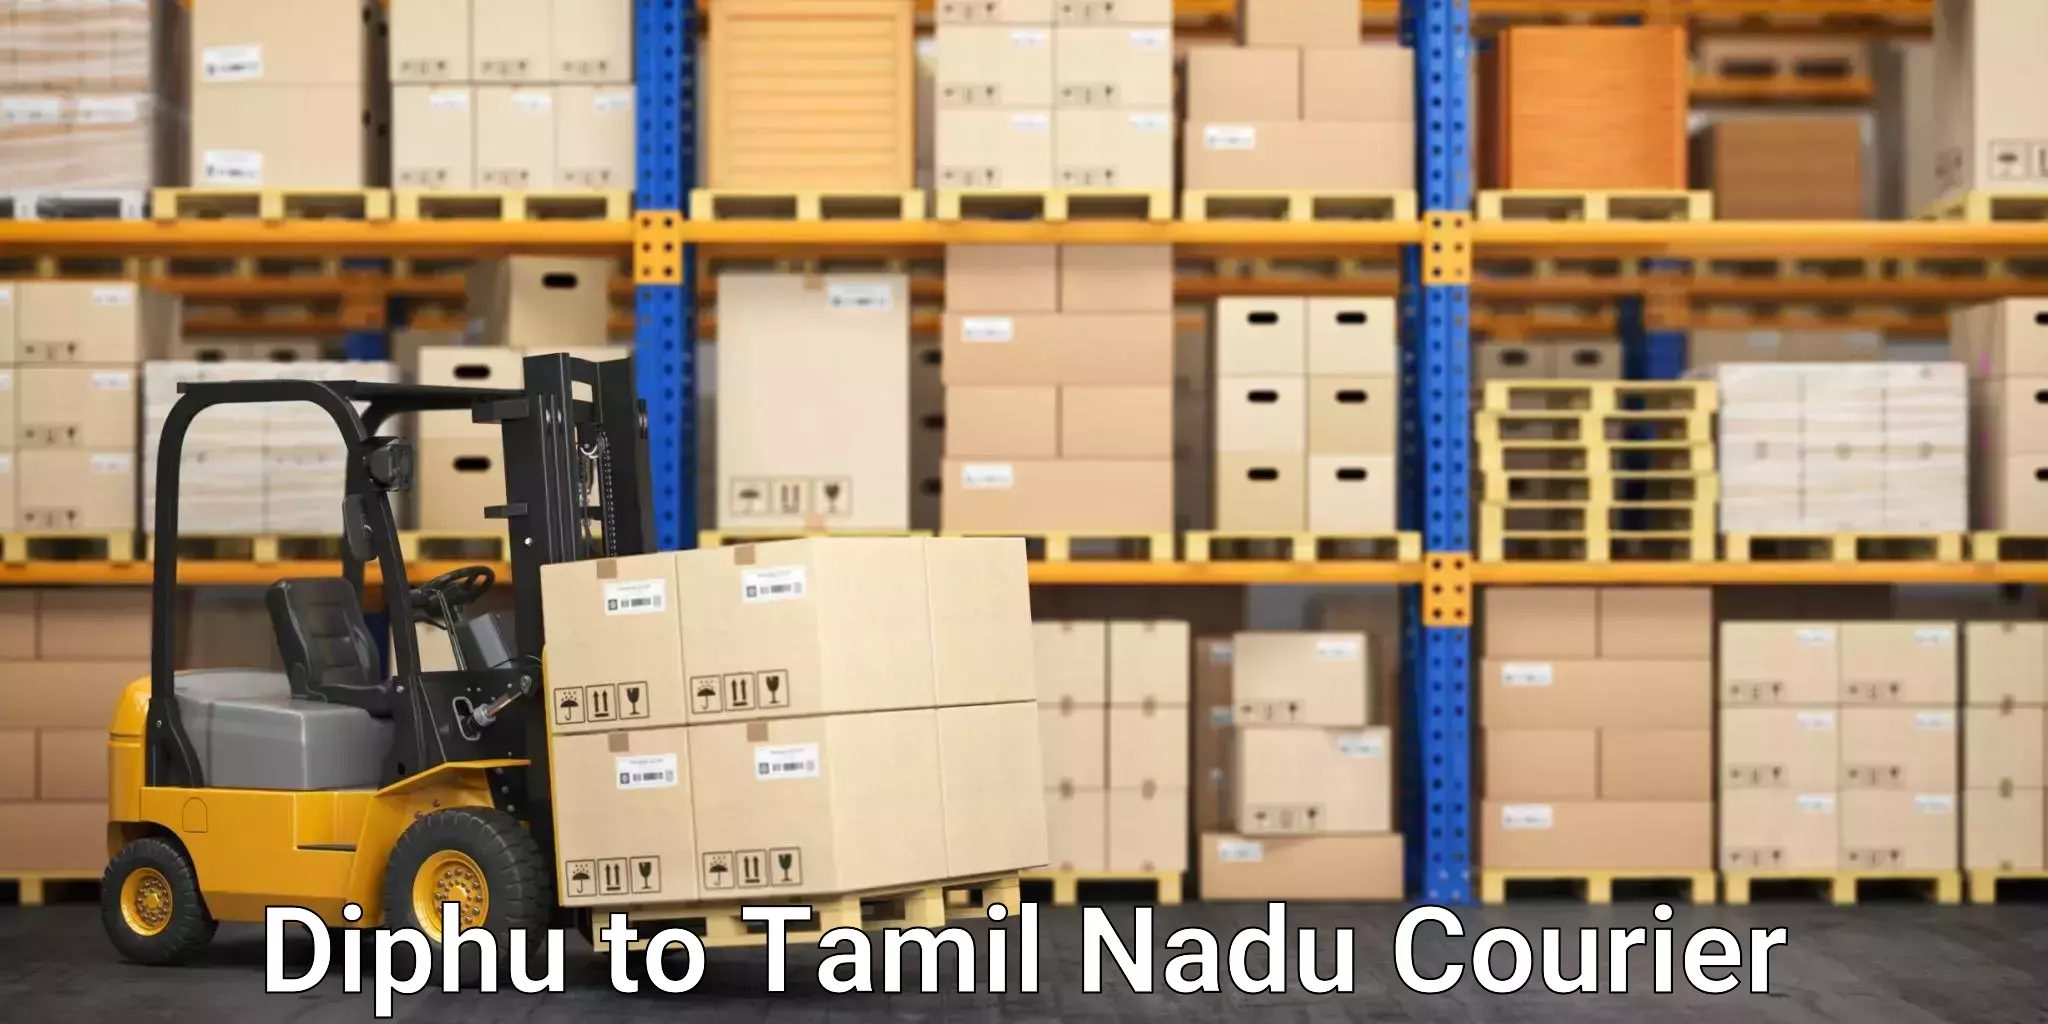 Reliable logistics providers Diphu to Thiruvadanai